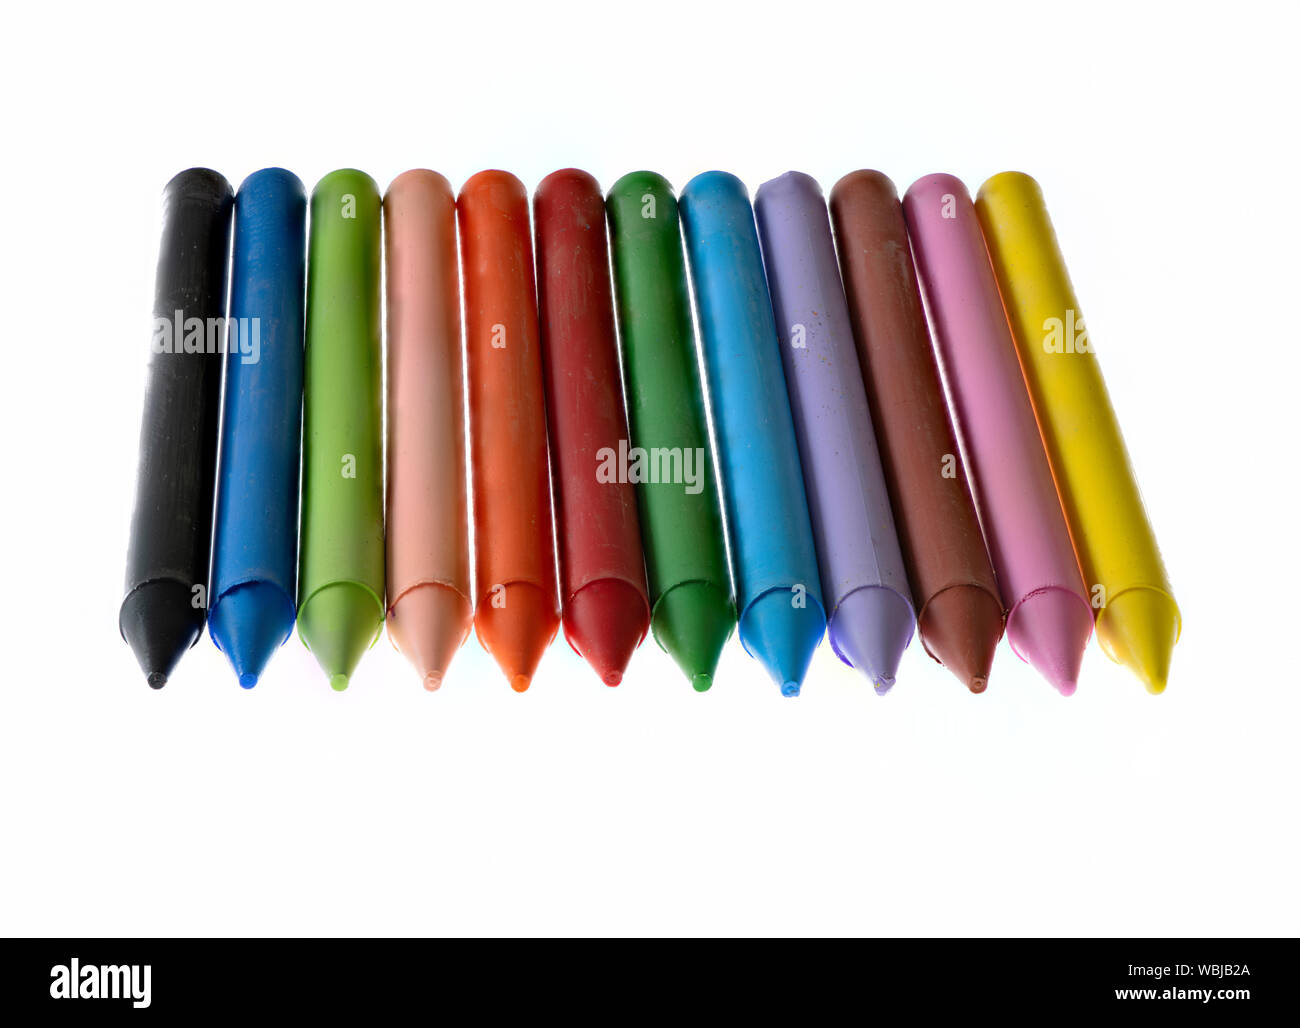 12 mehrfarbige Wachsmalstifte vor einem weißen Hintergrund Stockfoto